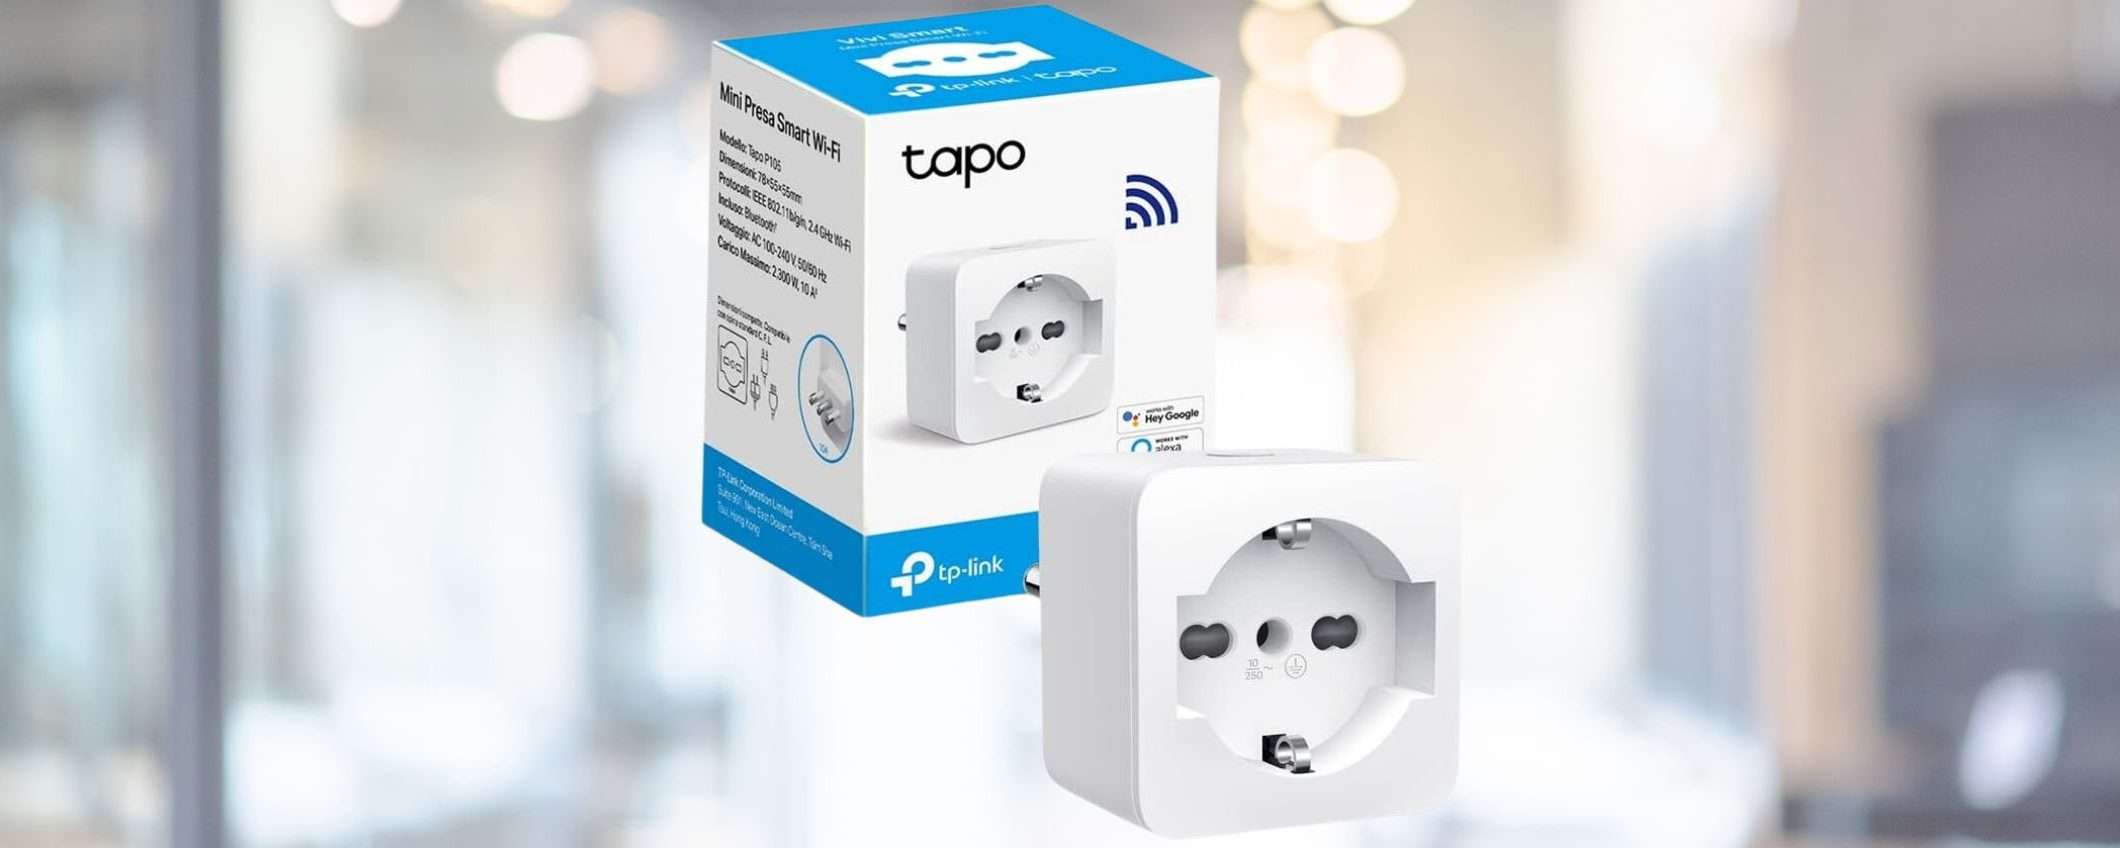 TP-Link Tapo P105: la presa smart WiFi è in offerta a soli 9,99€ (-38%)